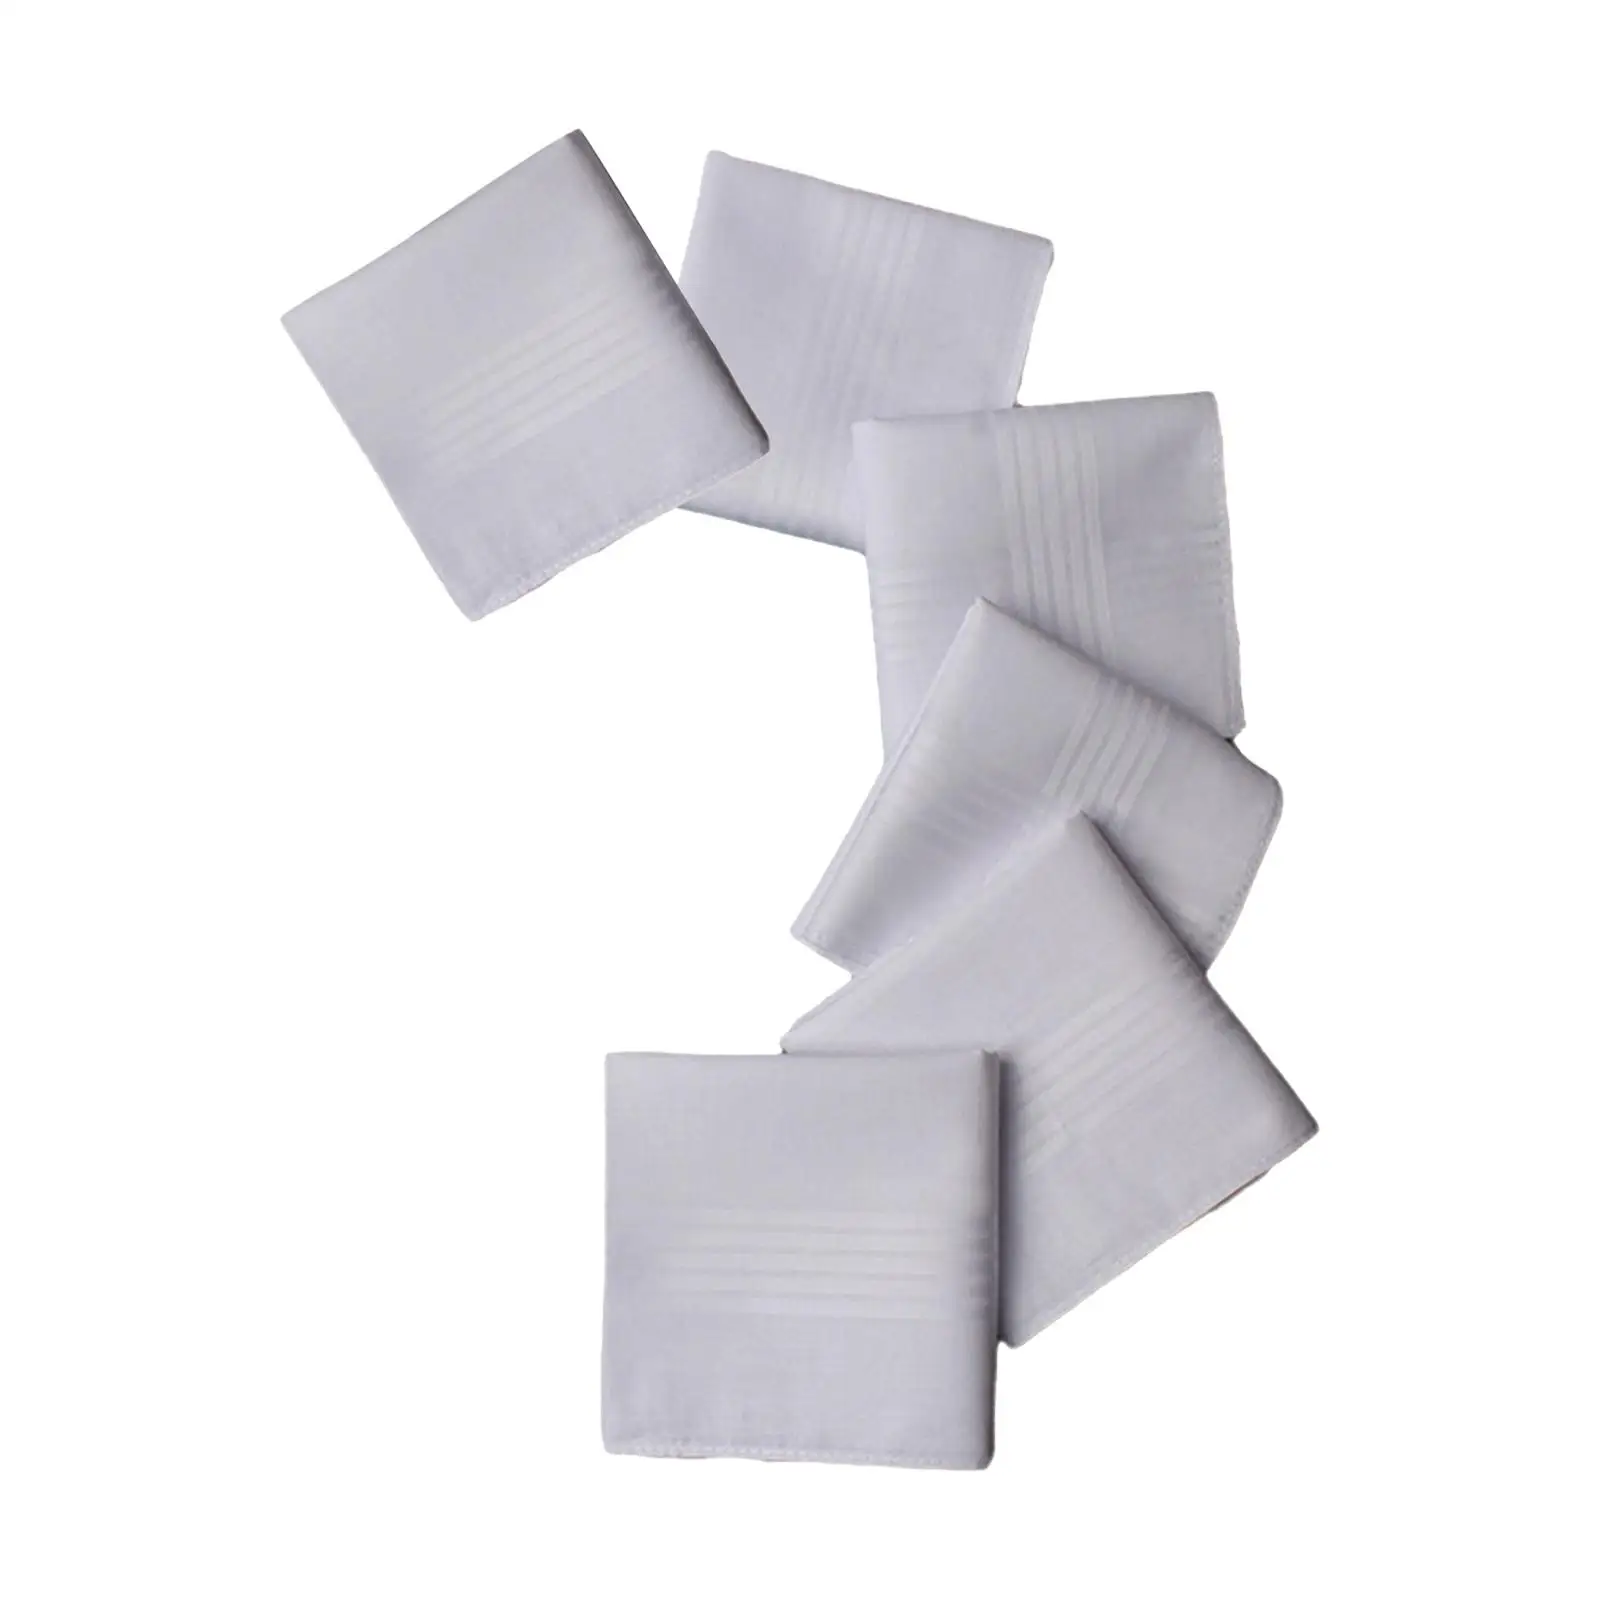 6x Pure White Handkerchiefs Solid Color Cotton Hankies Men Handkerchiefs Gift for Grandfather Birthday Wedding Gentlemen Party